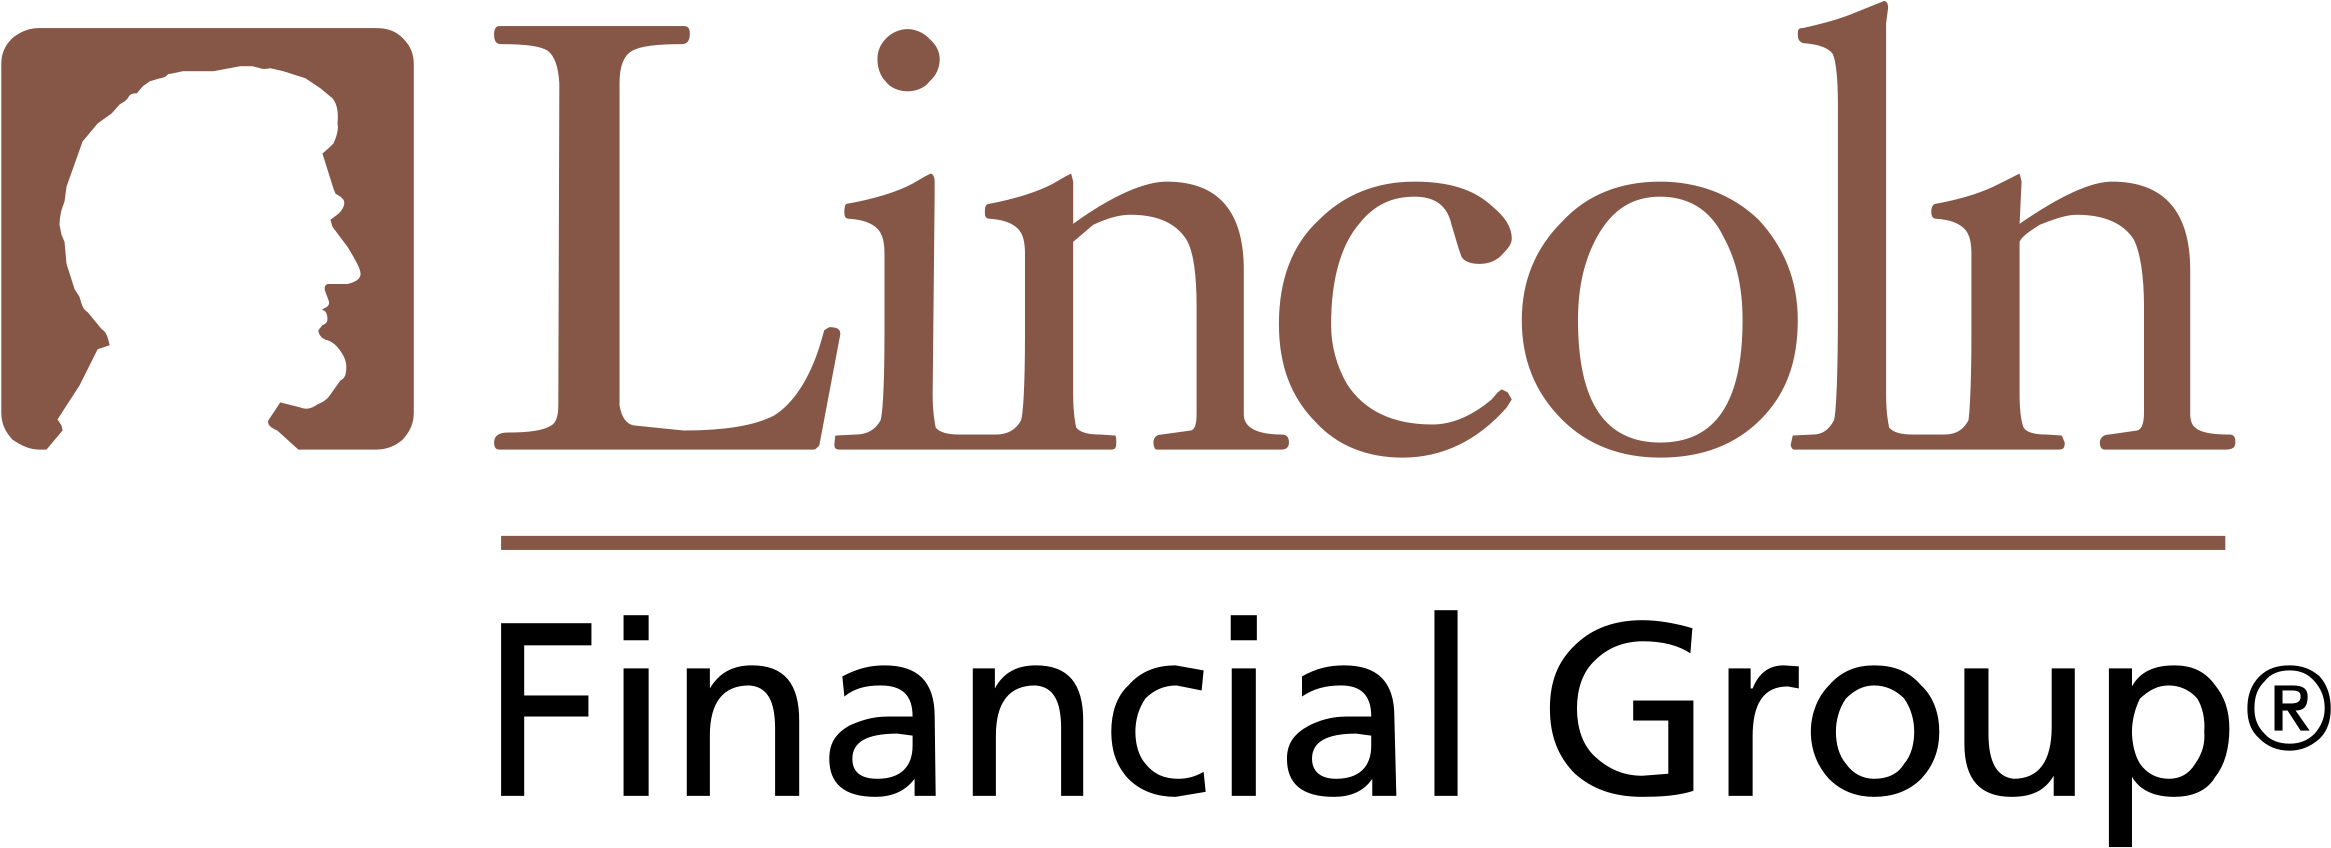 Linoln Financial Group Company Logo